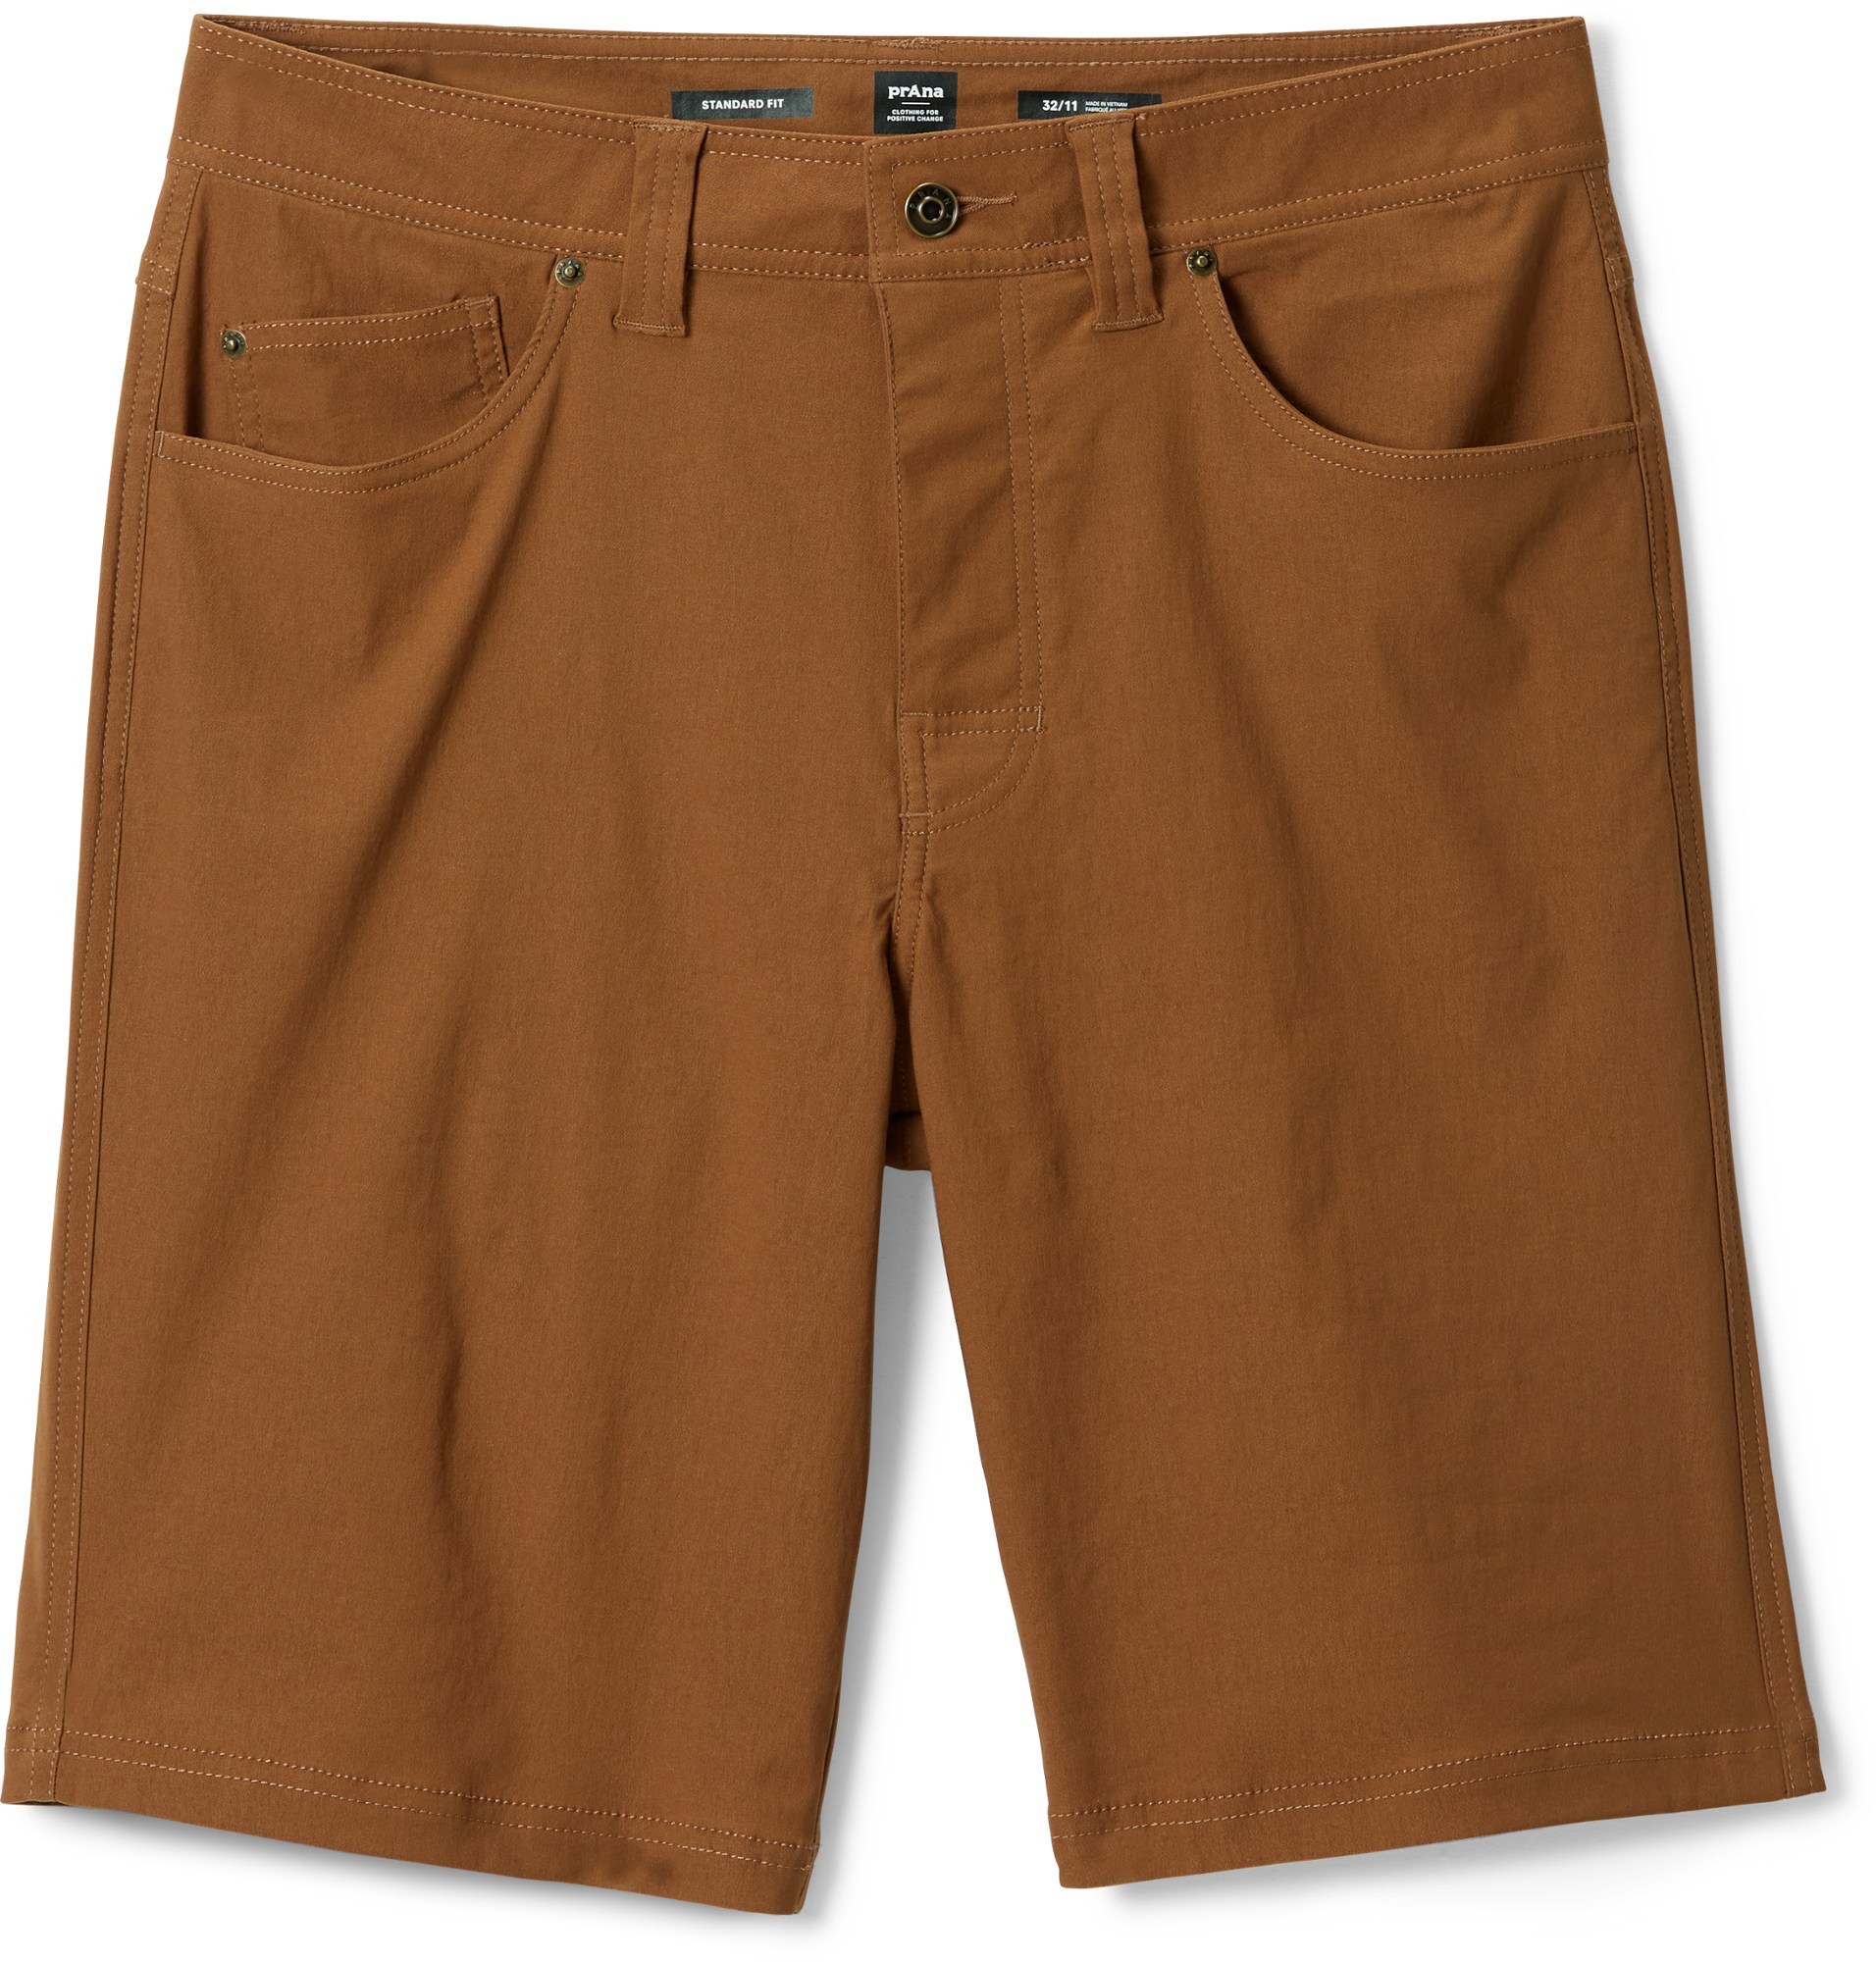 Шорты Brion II — мужские, внутренний шов 11 дюймов prAna, коричневый шорты prana station shorts цвет sorrel